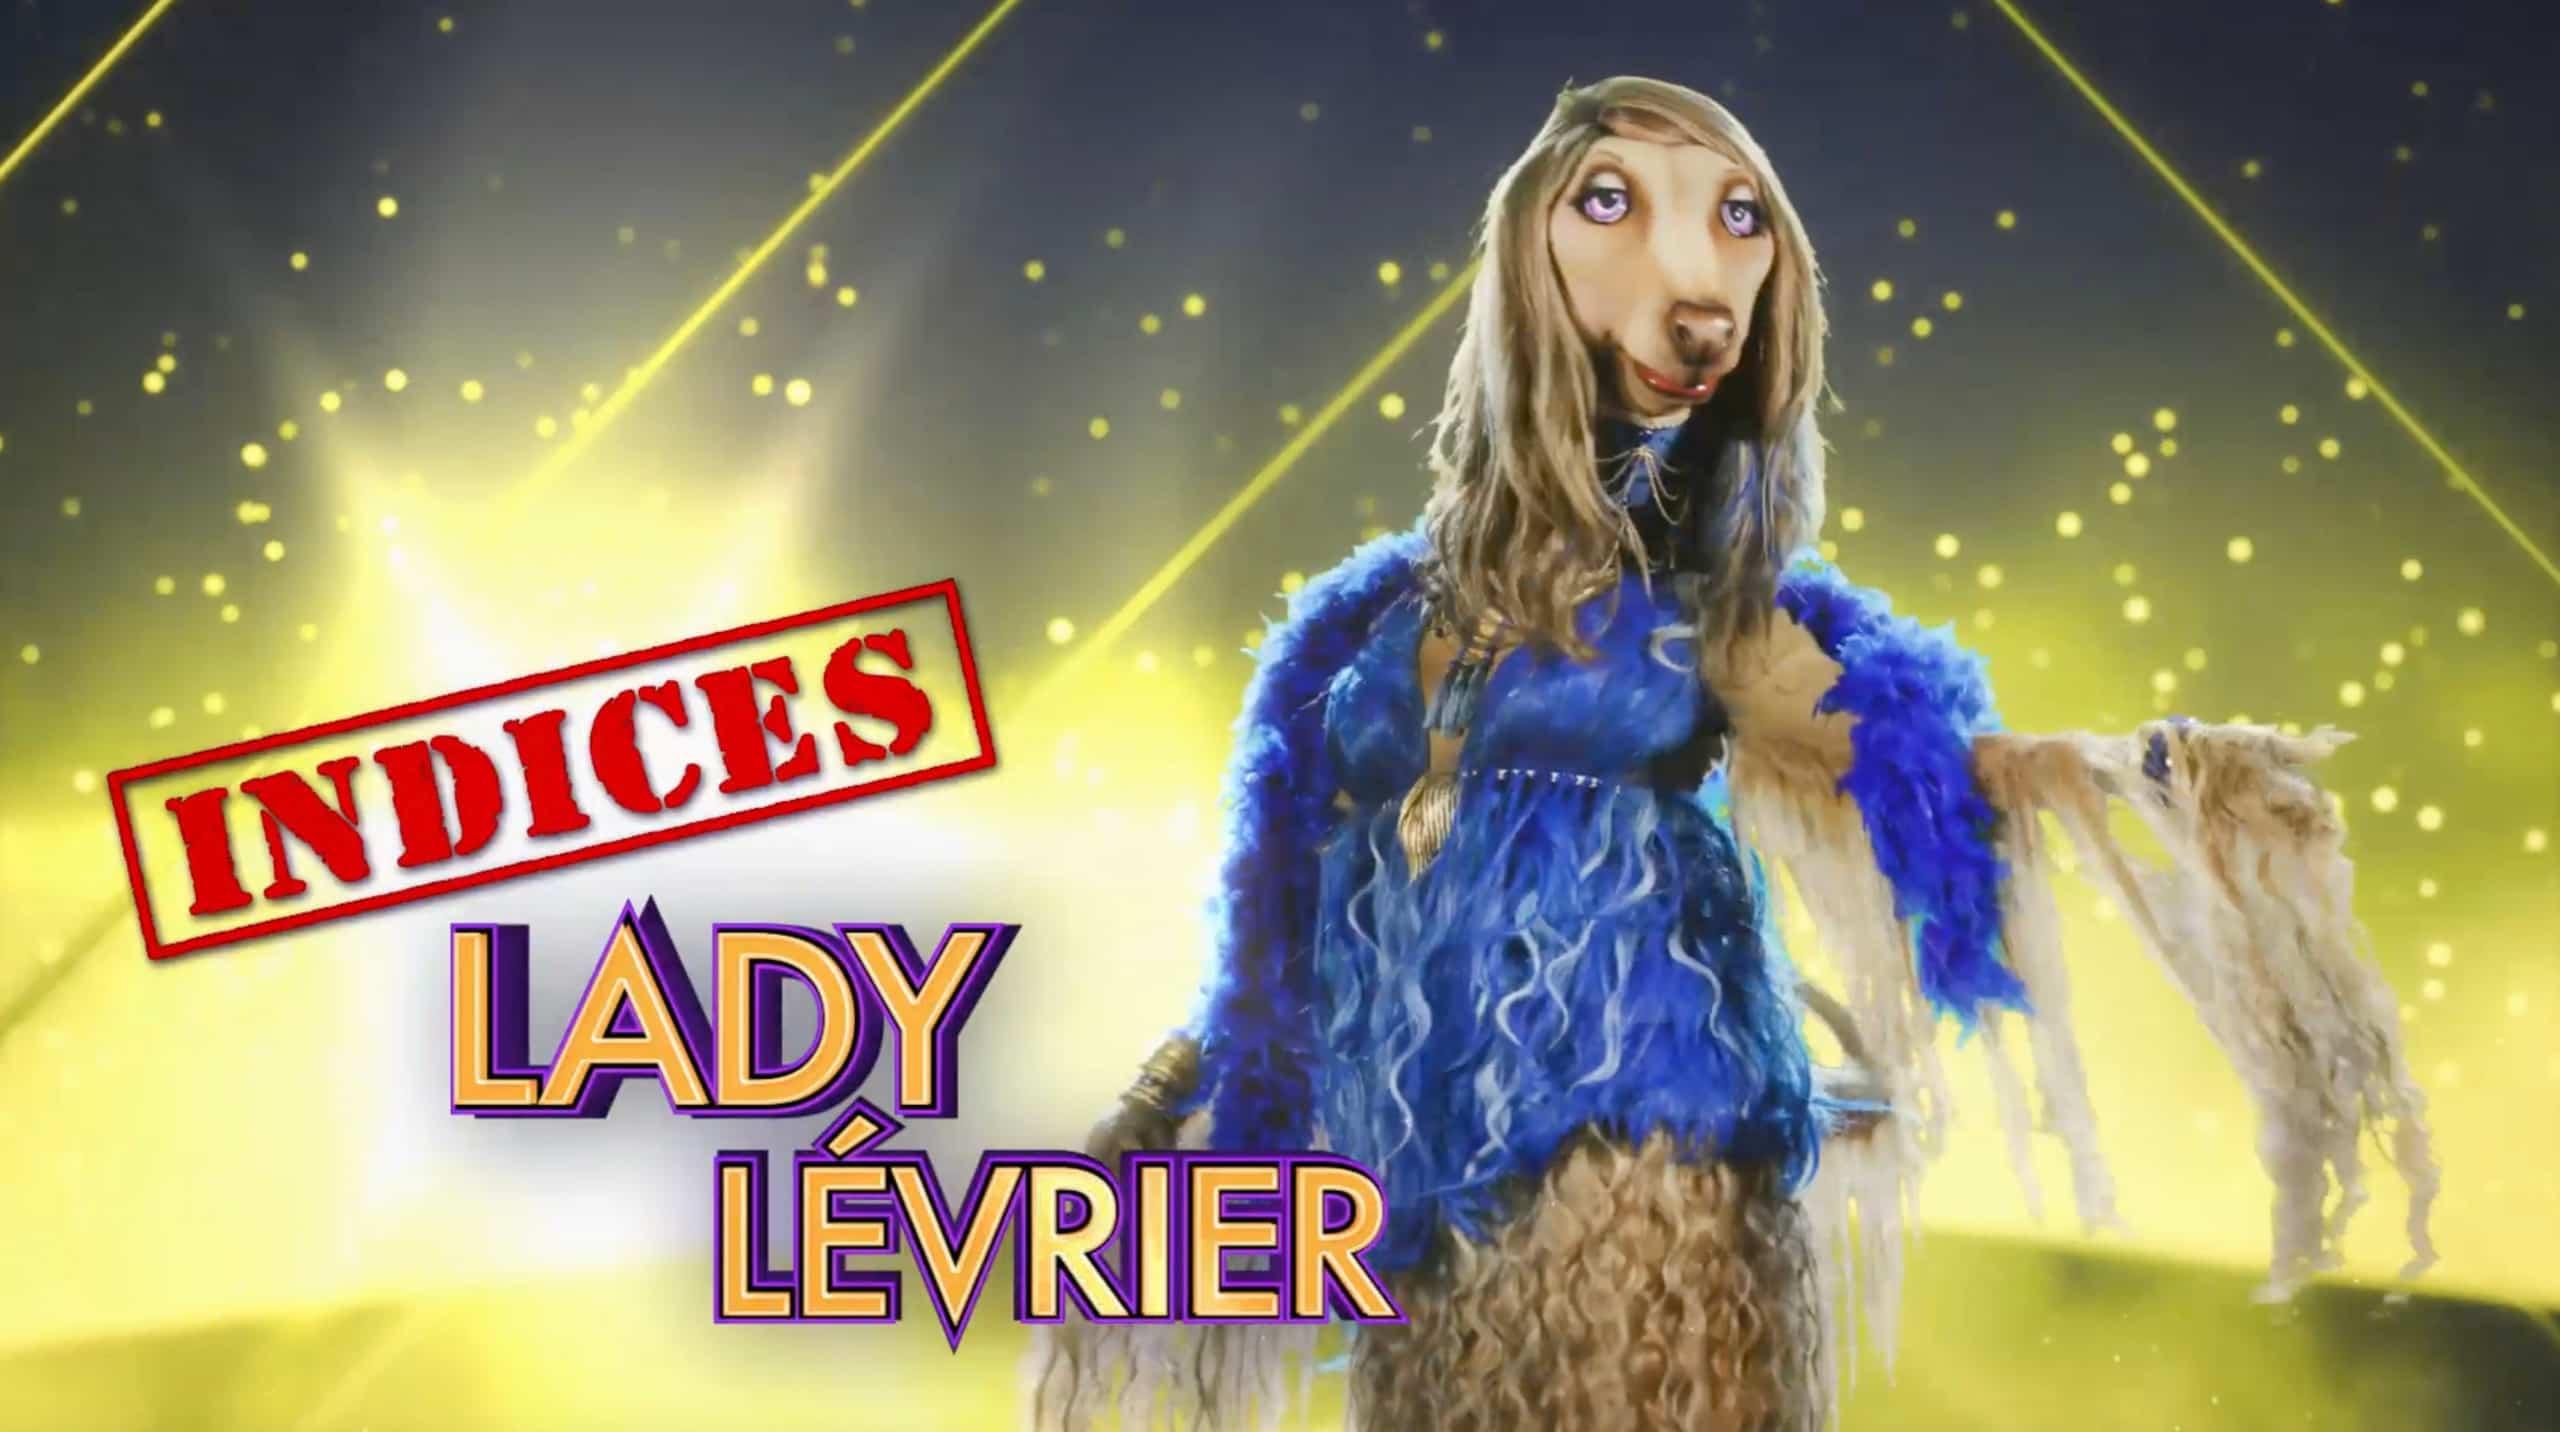 Lady Lévrier - Indices 2